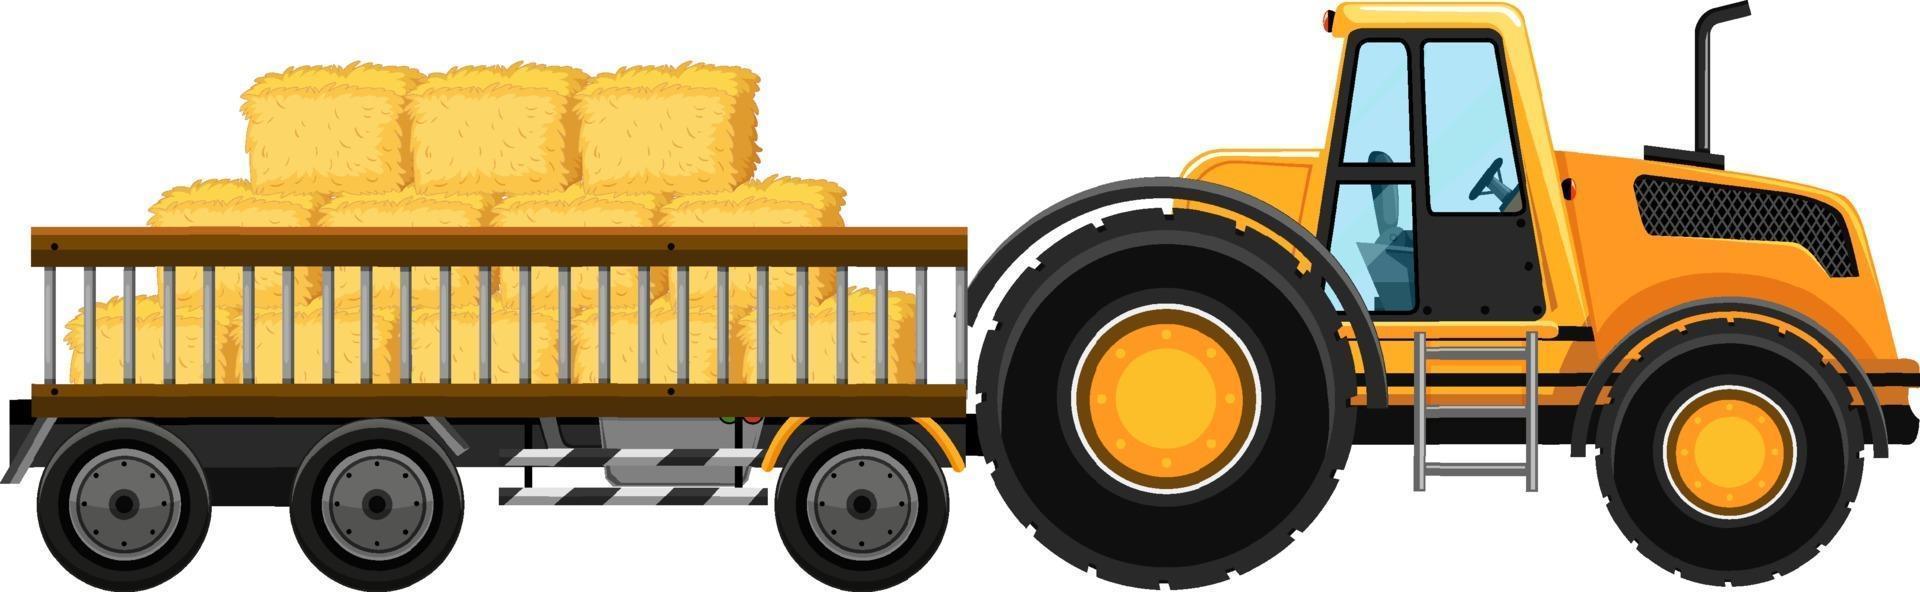 traktor med hö i vagnen vektor